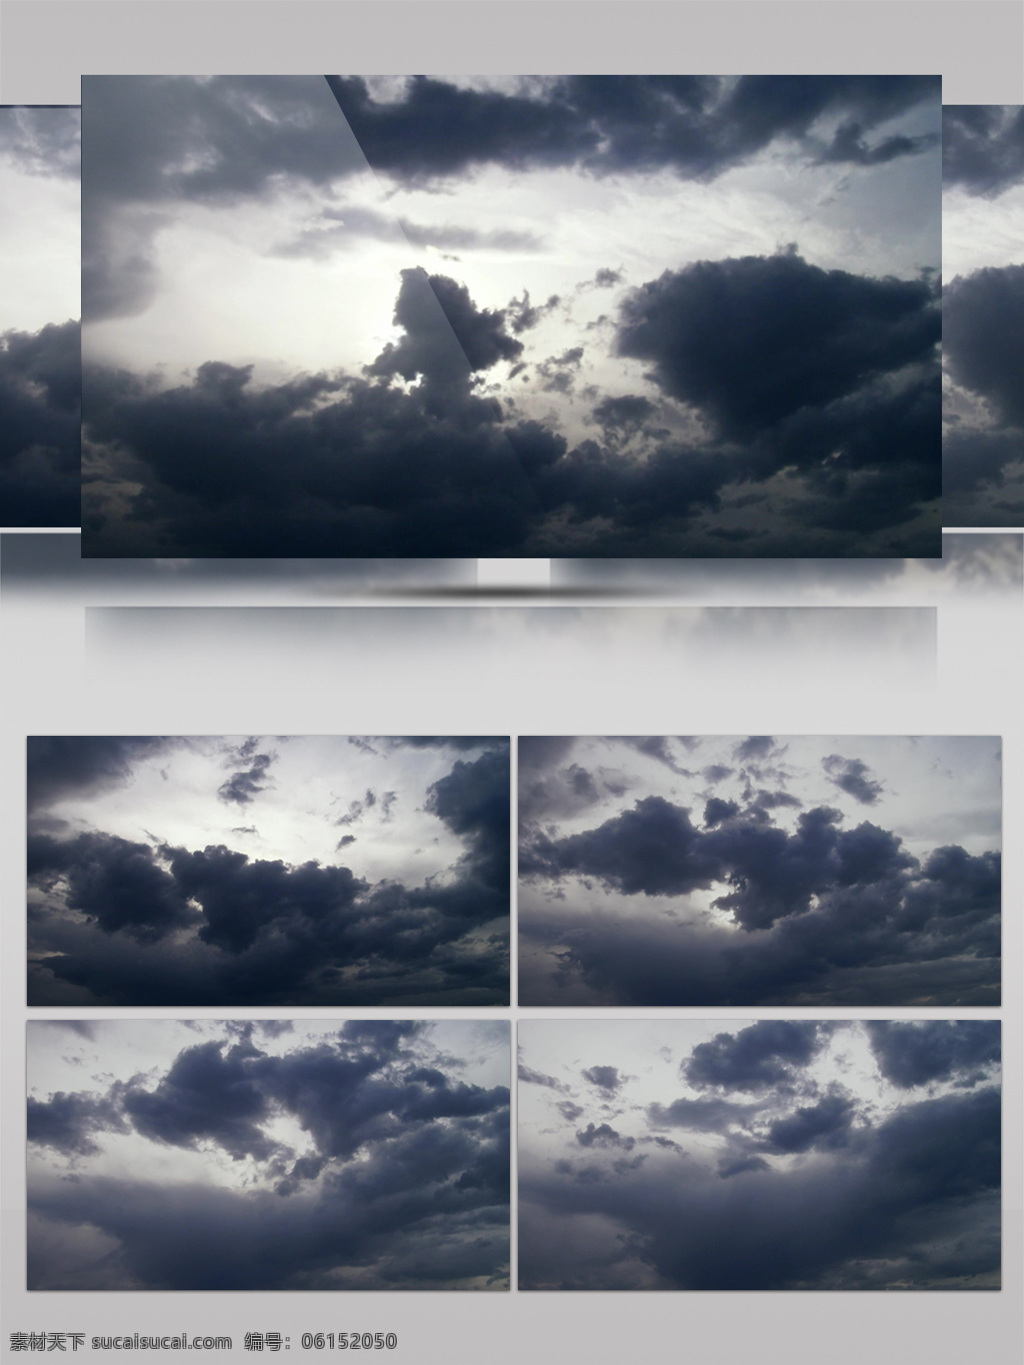 乌云 遮蔽 阳光 天空 景色 视频 云朵 太阳 云层 灰暗 遮盖 阴天